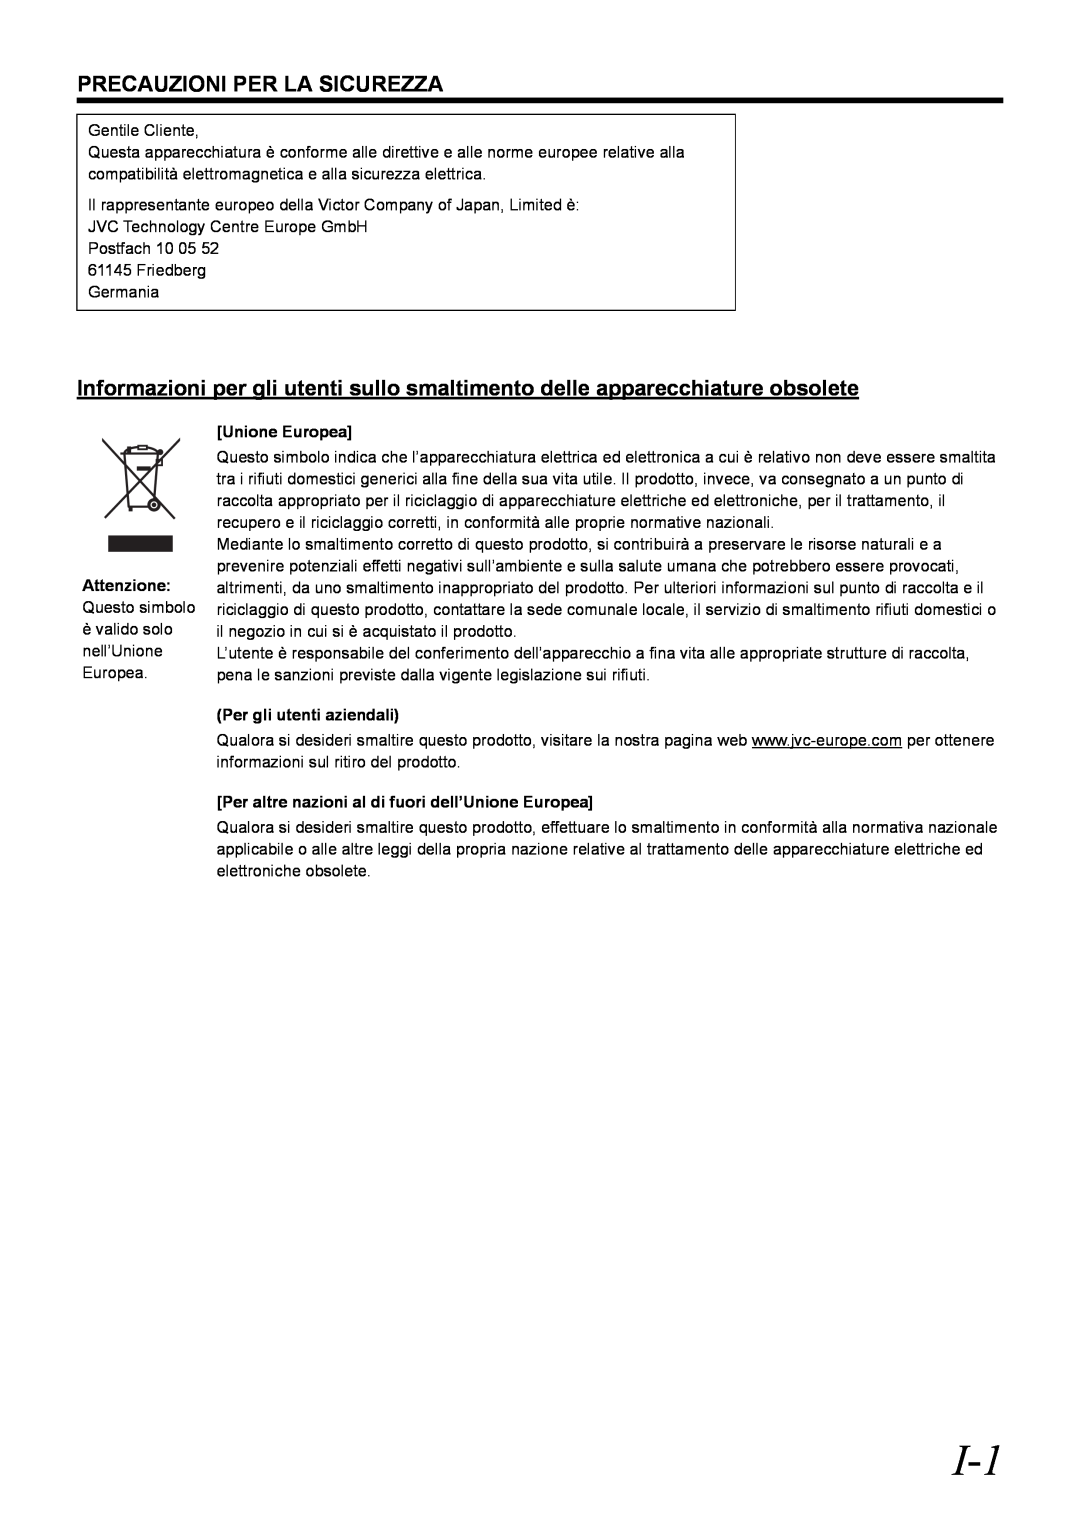 JVC VR-D0U manual Precauzioni Per La Sicurezza, Unione Europea, Per gli utenti aziendali 